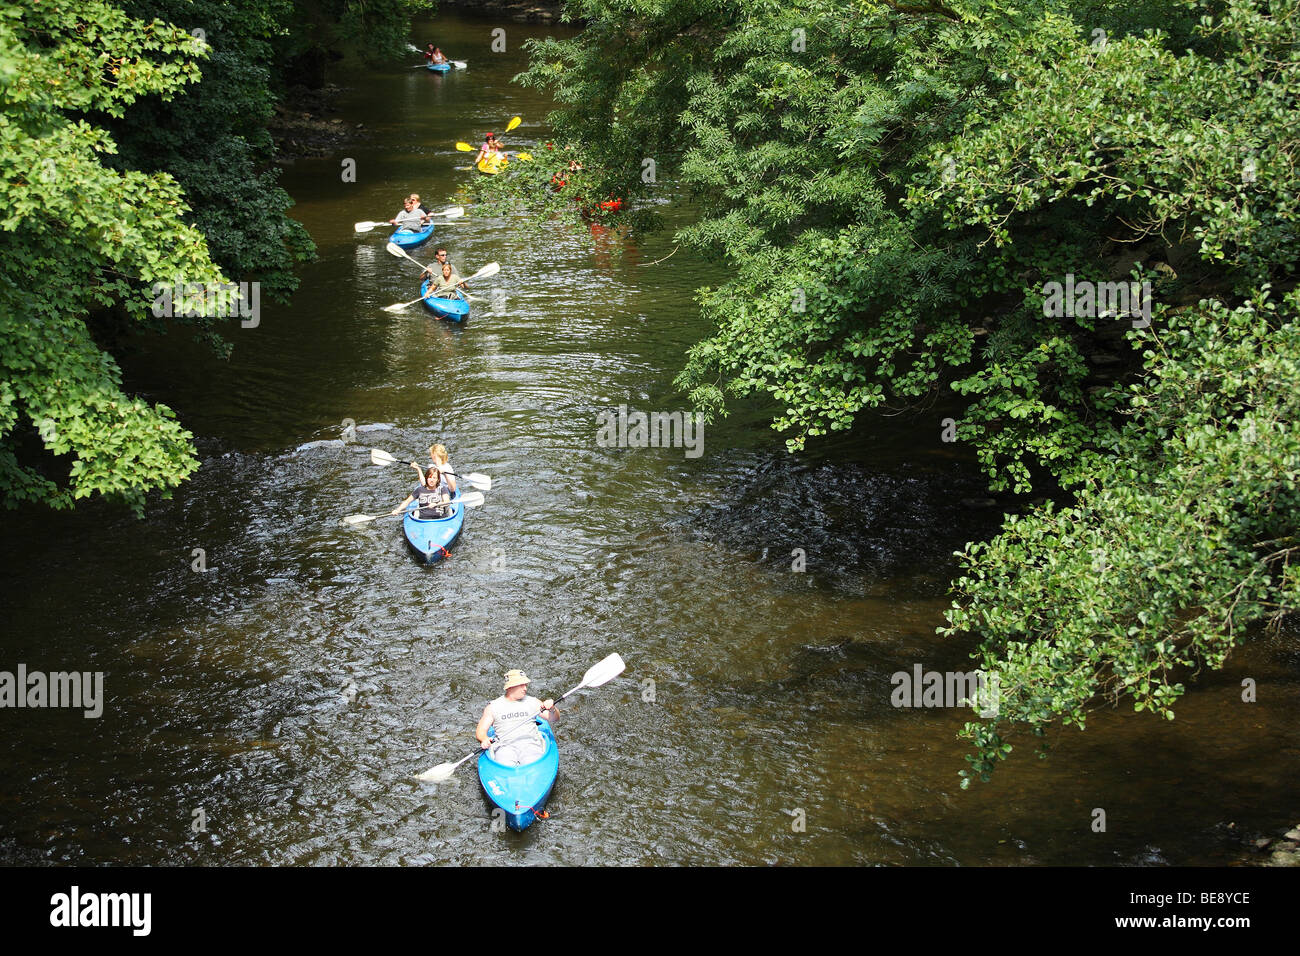 Kayakken op de rivier de Lesse in de Ardennen, Belgi Kayaking / Canoeing on the river Lesse in the Ardennes, Belgium Stock Photo